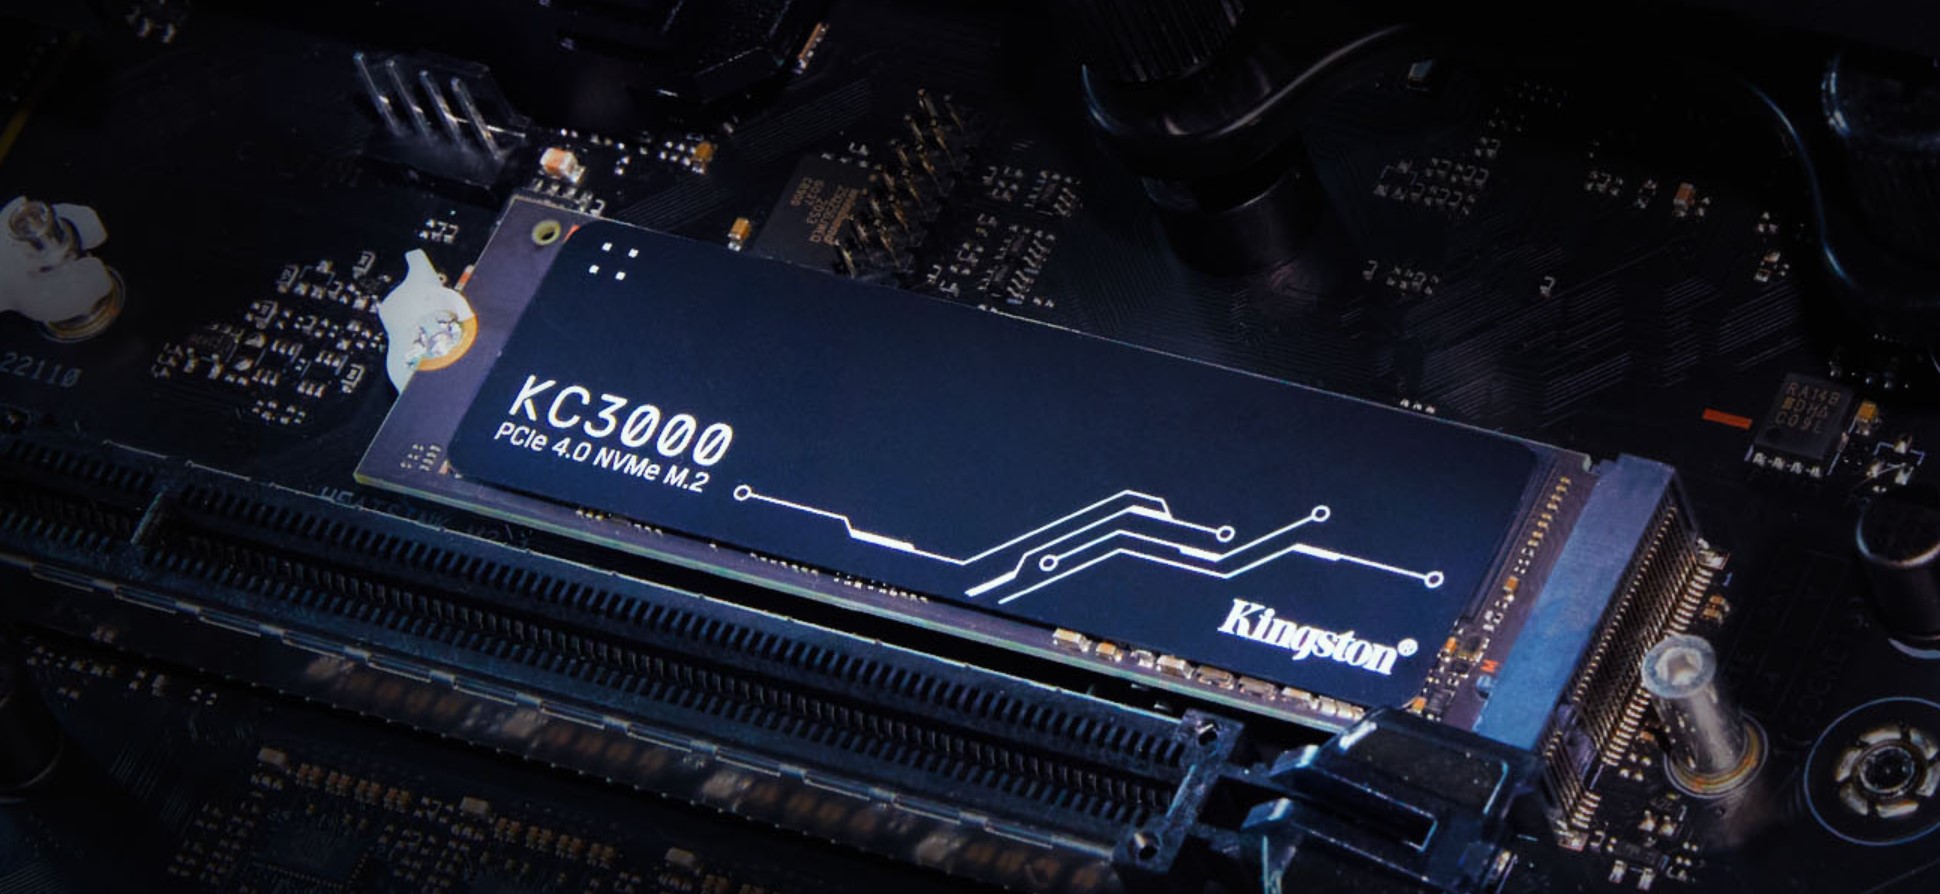 Kingston KC3000 SSD - 2TB - PCIe 4.0 - M.2 2280